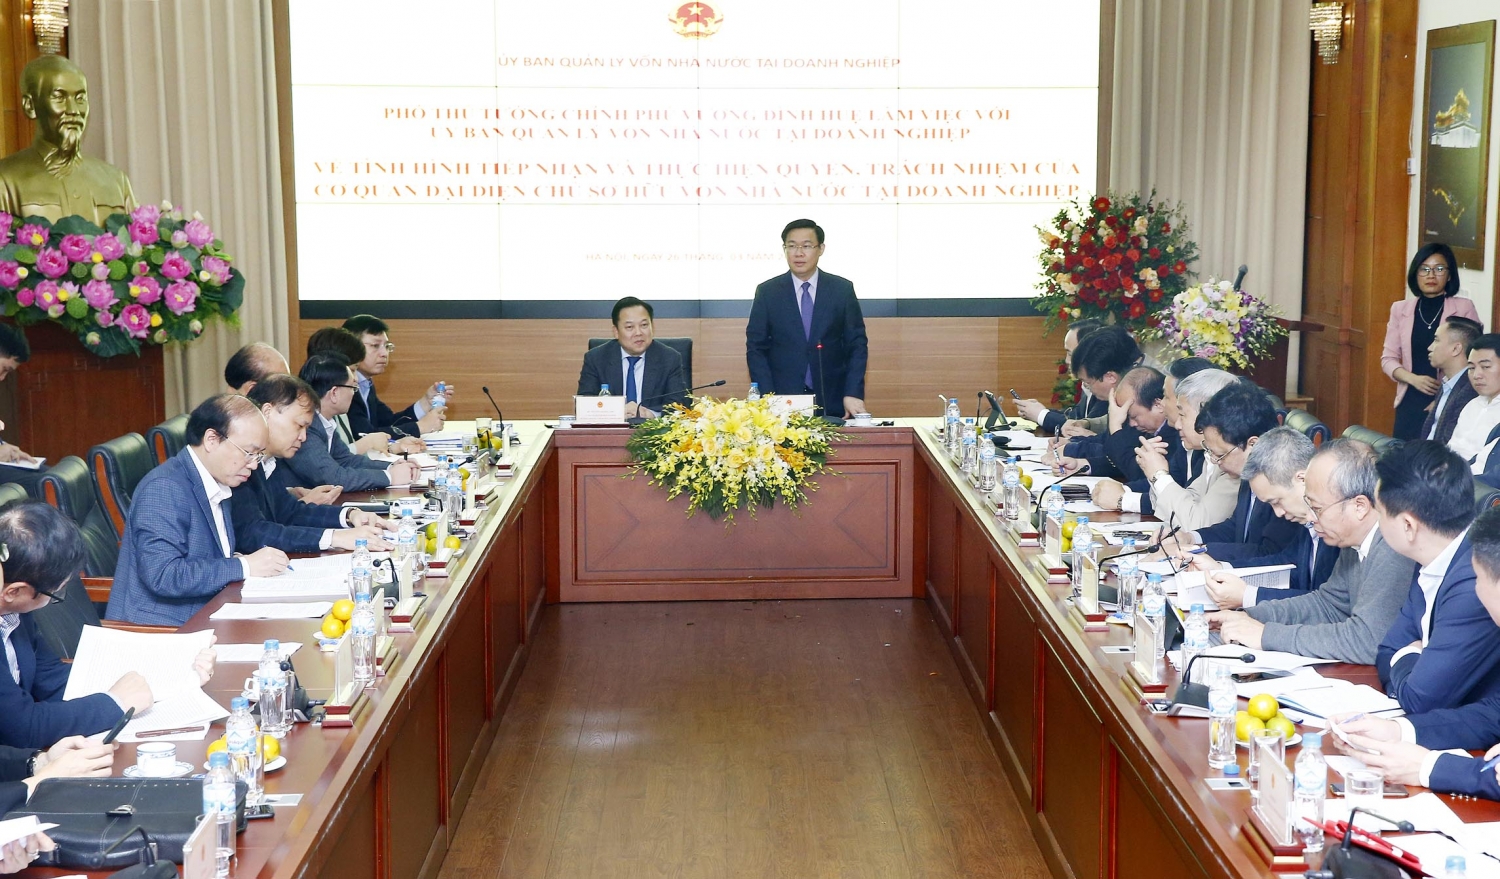 Phó Thủ tướng Vương Đình Huệ chỉ ra cái khó của Uỷ ban Quản lý vốn nhà nước tại doanh nghiệp